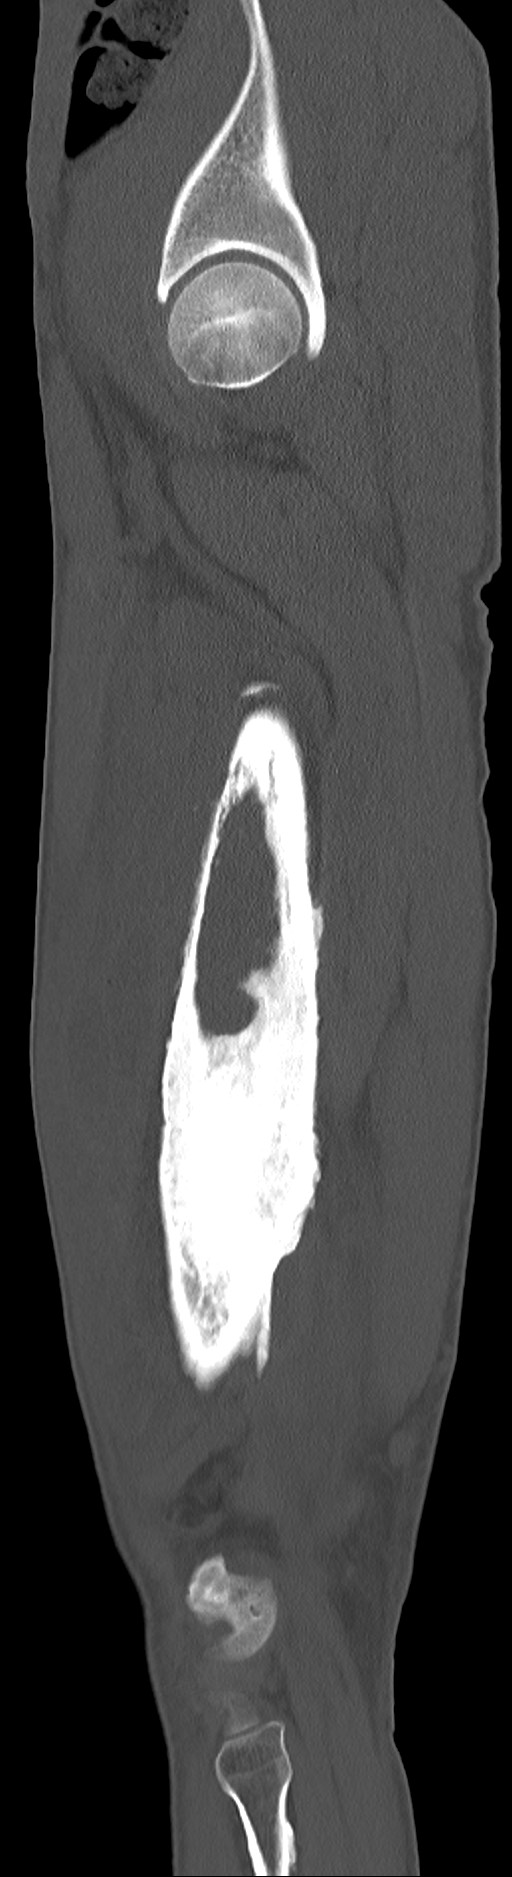 Chronic osteomyelitis (with sequestrum) (Radiopaedia 74813-85822 C 84).jpg